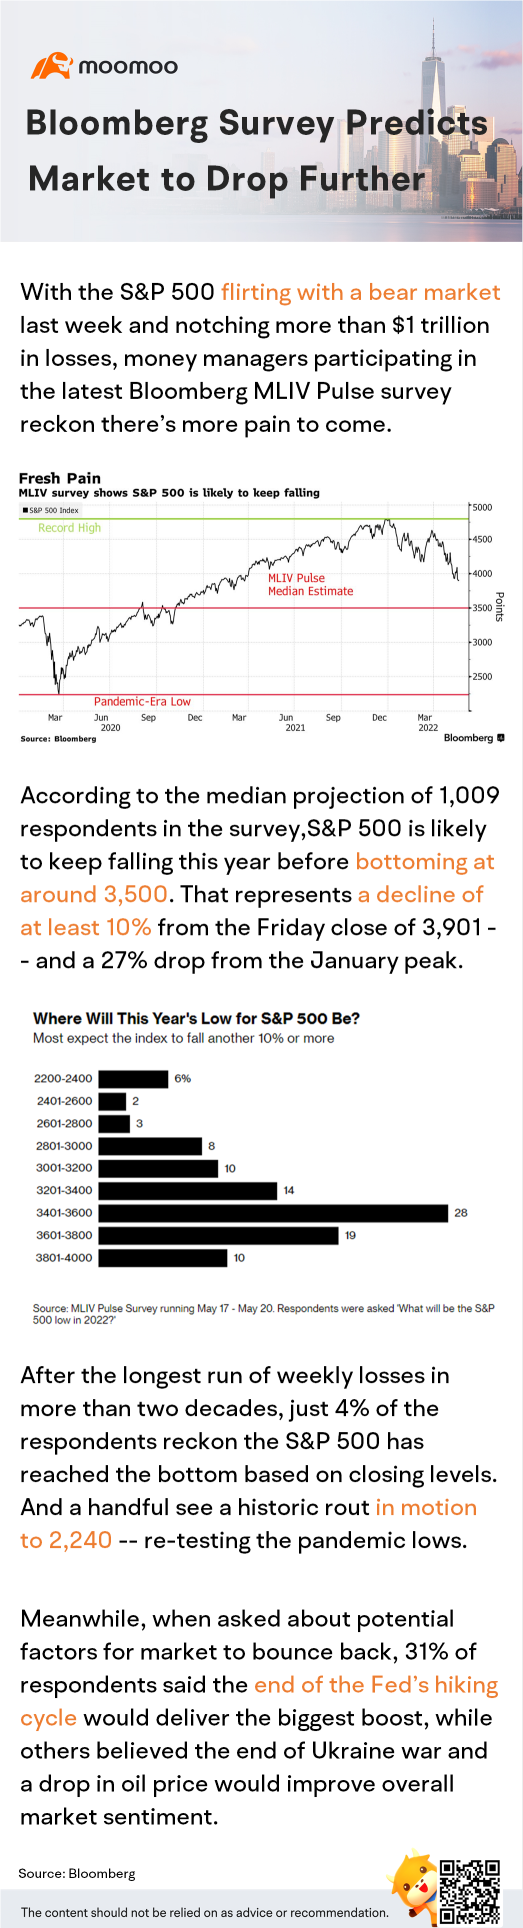 彭博調查預測市場將進一步下跌